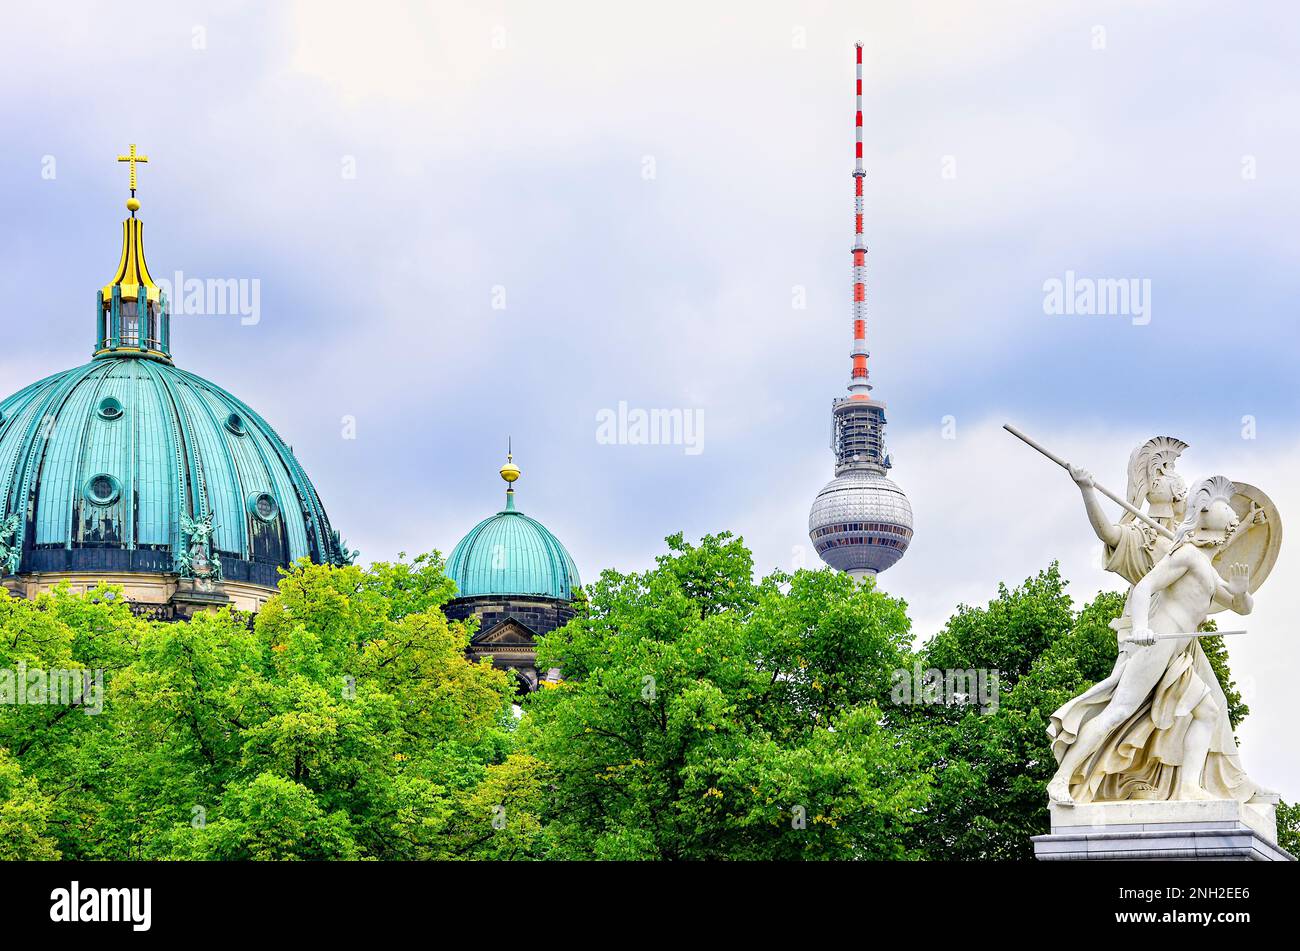 Wunderschönes Berlin, malerischer Blick auf den Berliner Dom, Berliner Fernsehturm und klassische antike Skulpturen auf der Schlossbrücke, Berlin, Deutschland, Europa. Stockfoto